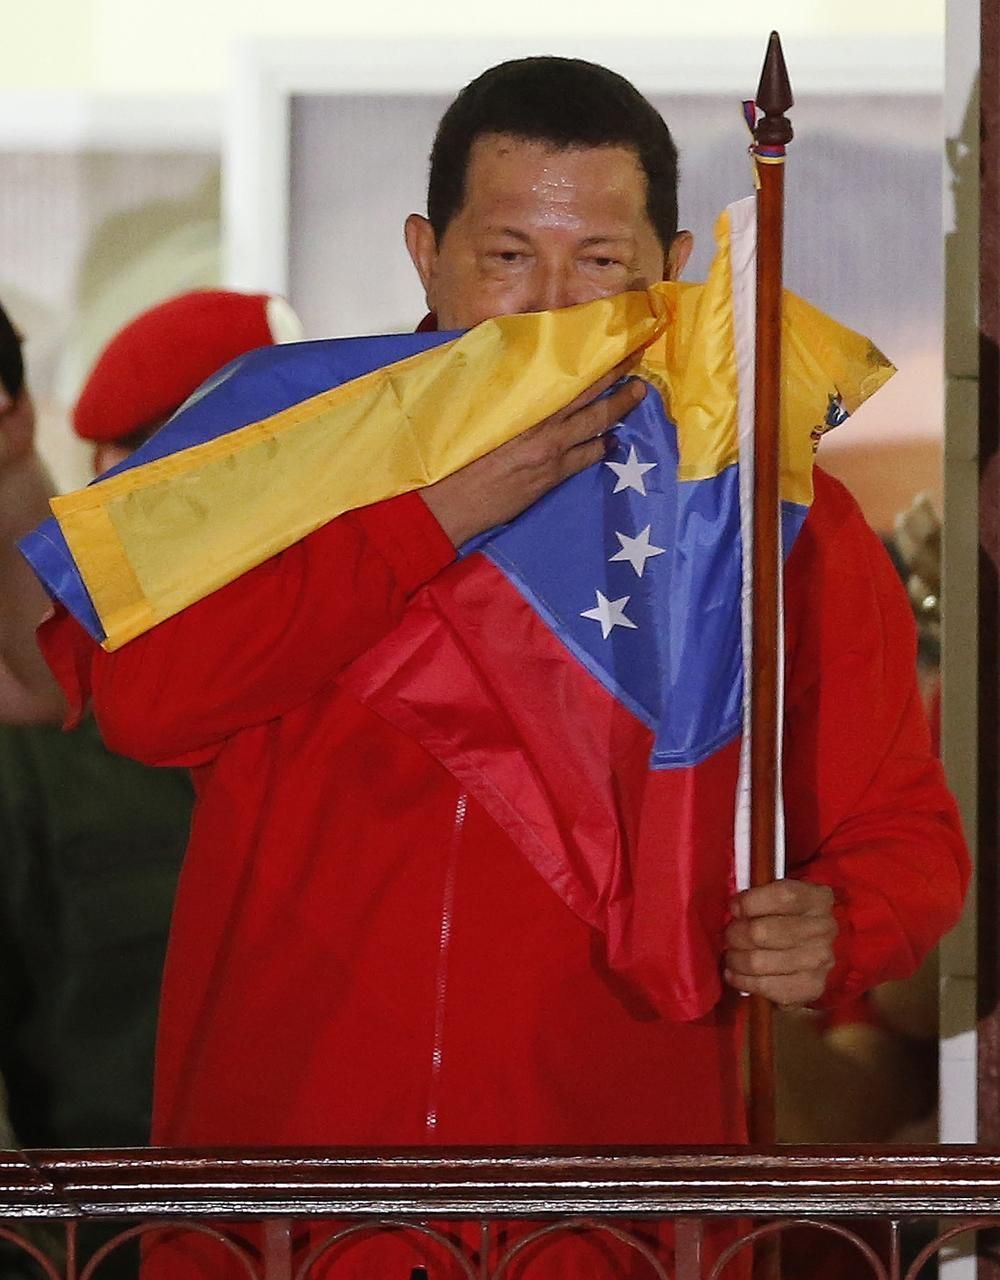 Foto: Chávez vyhrál volby